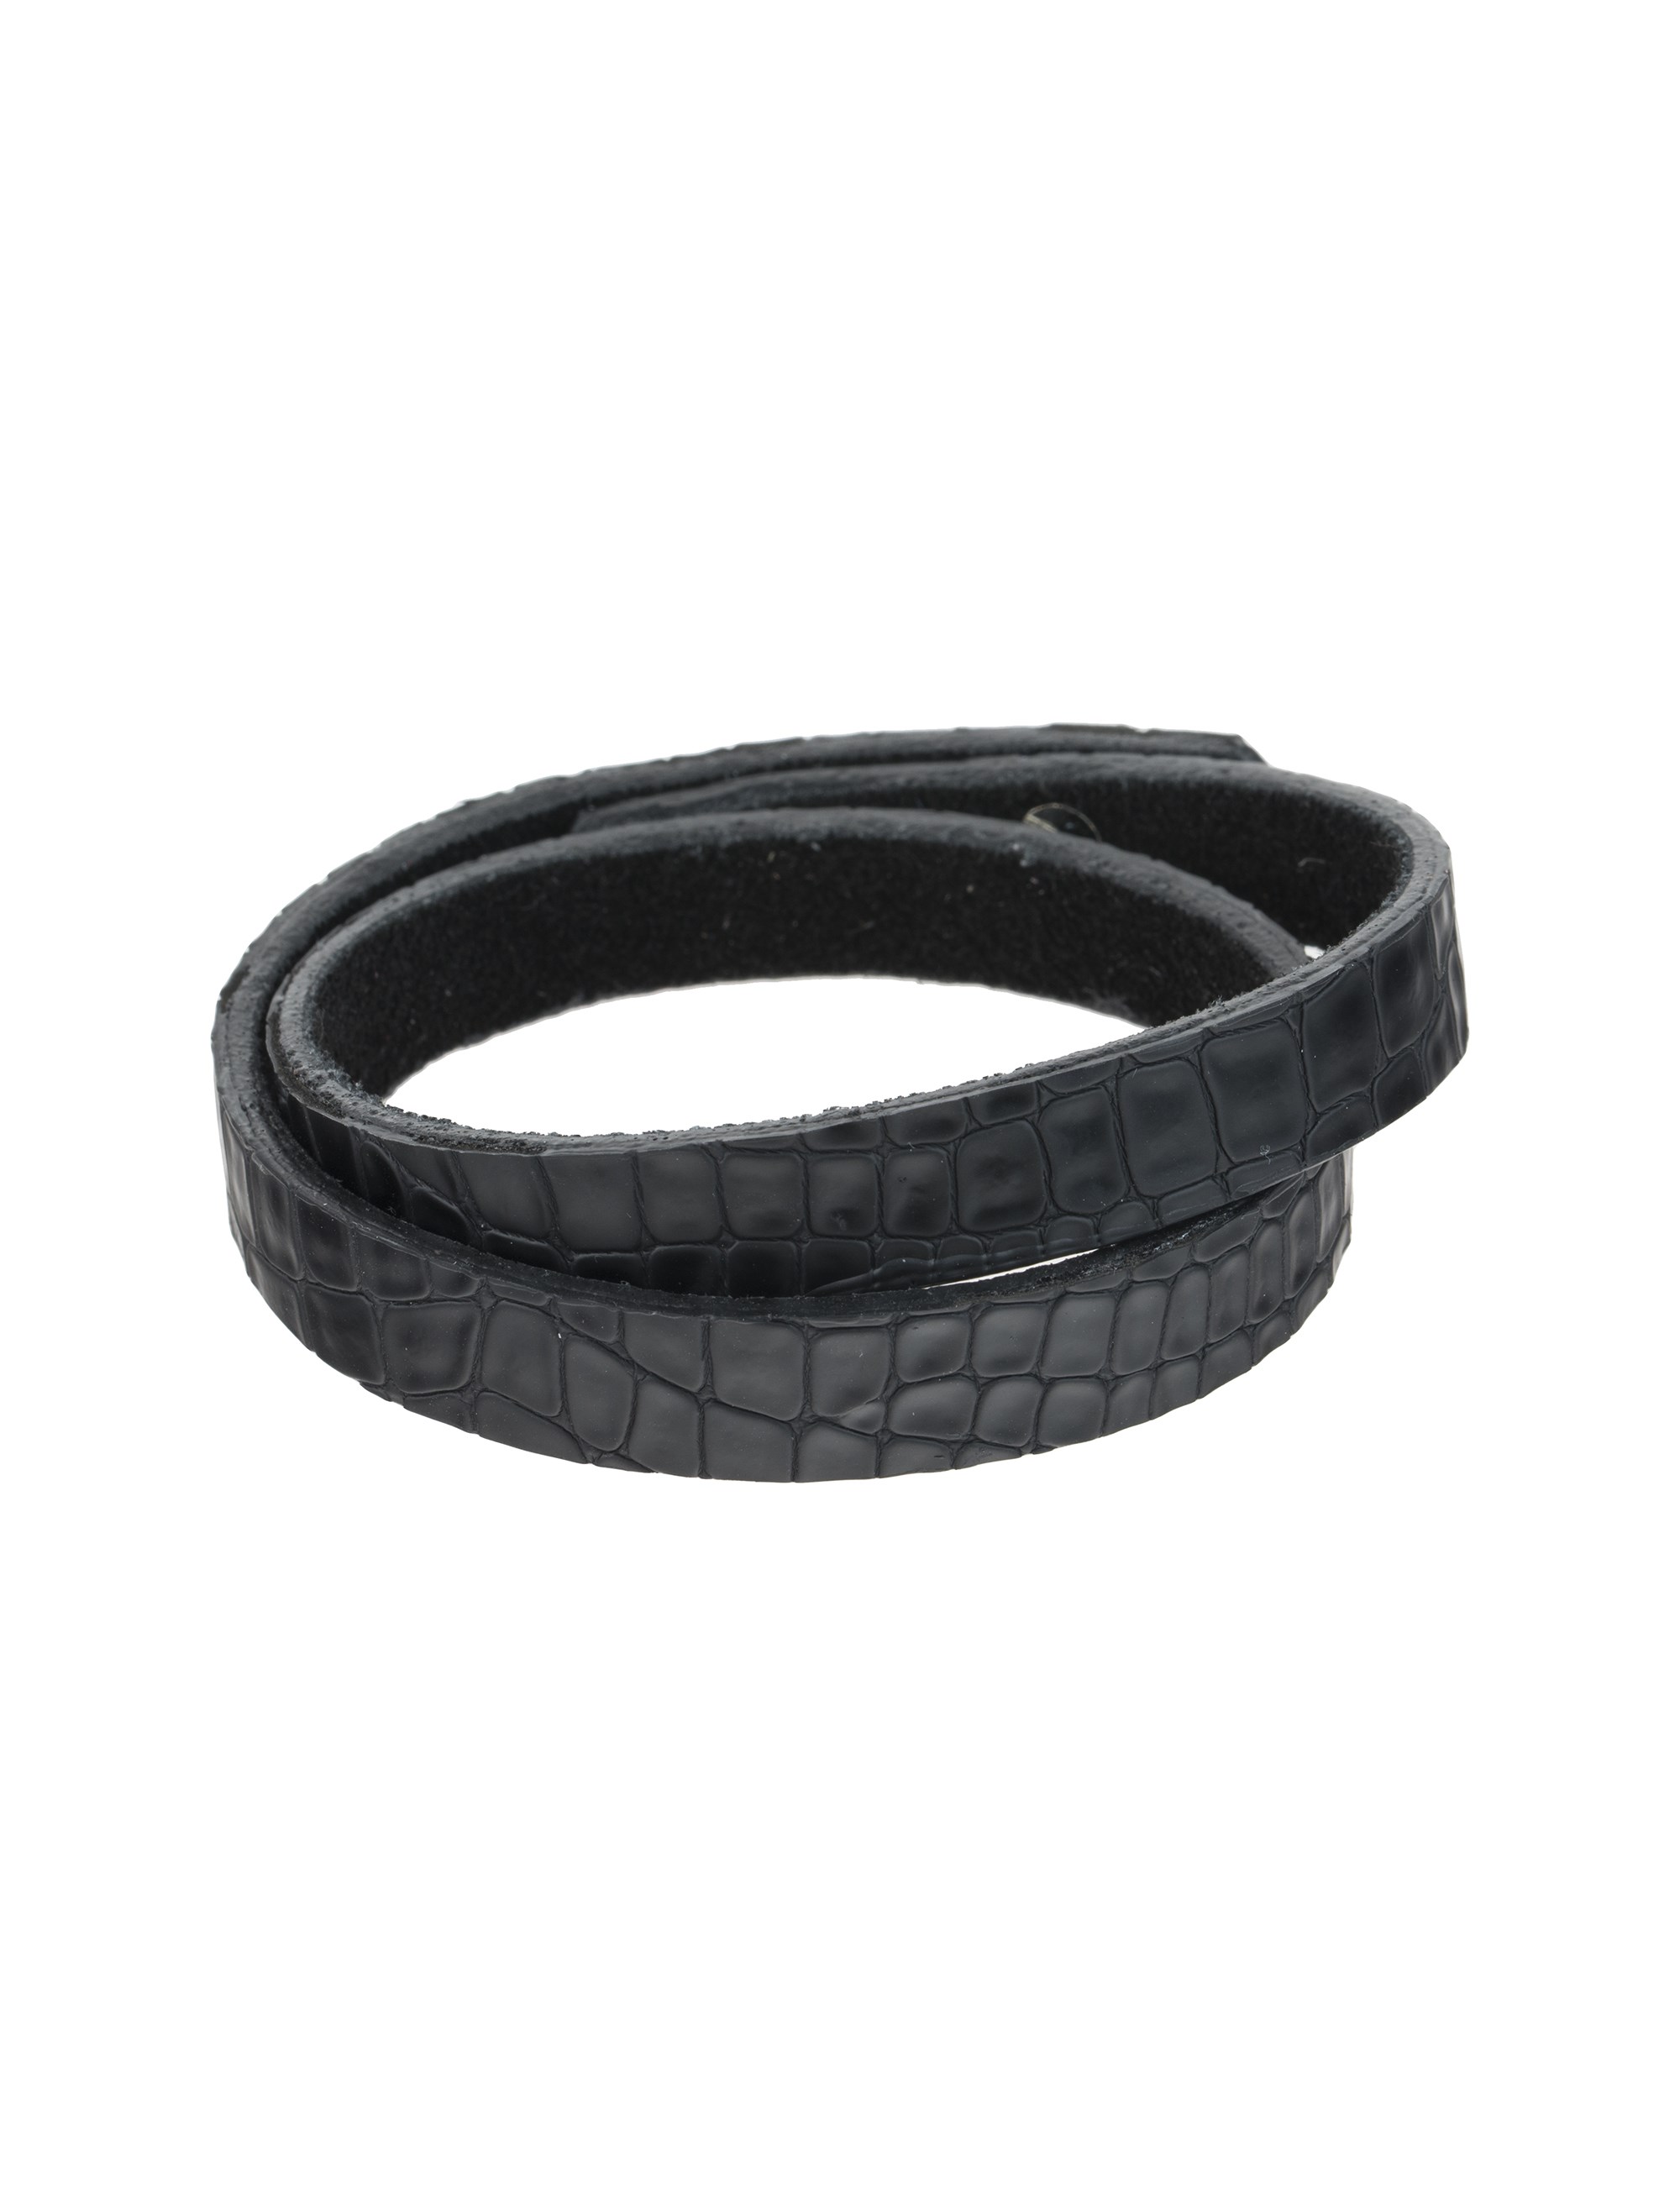 دستبند چرم مردانه - ماکو دیزاین سایز M